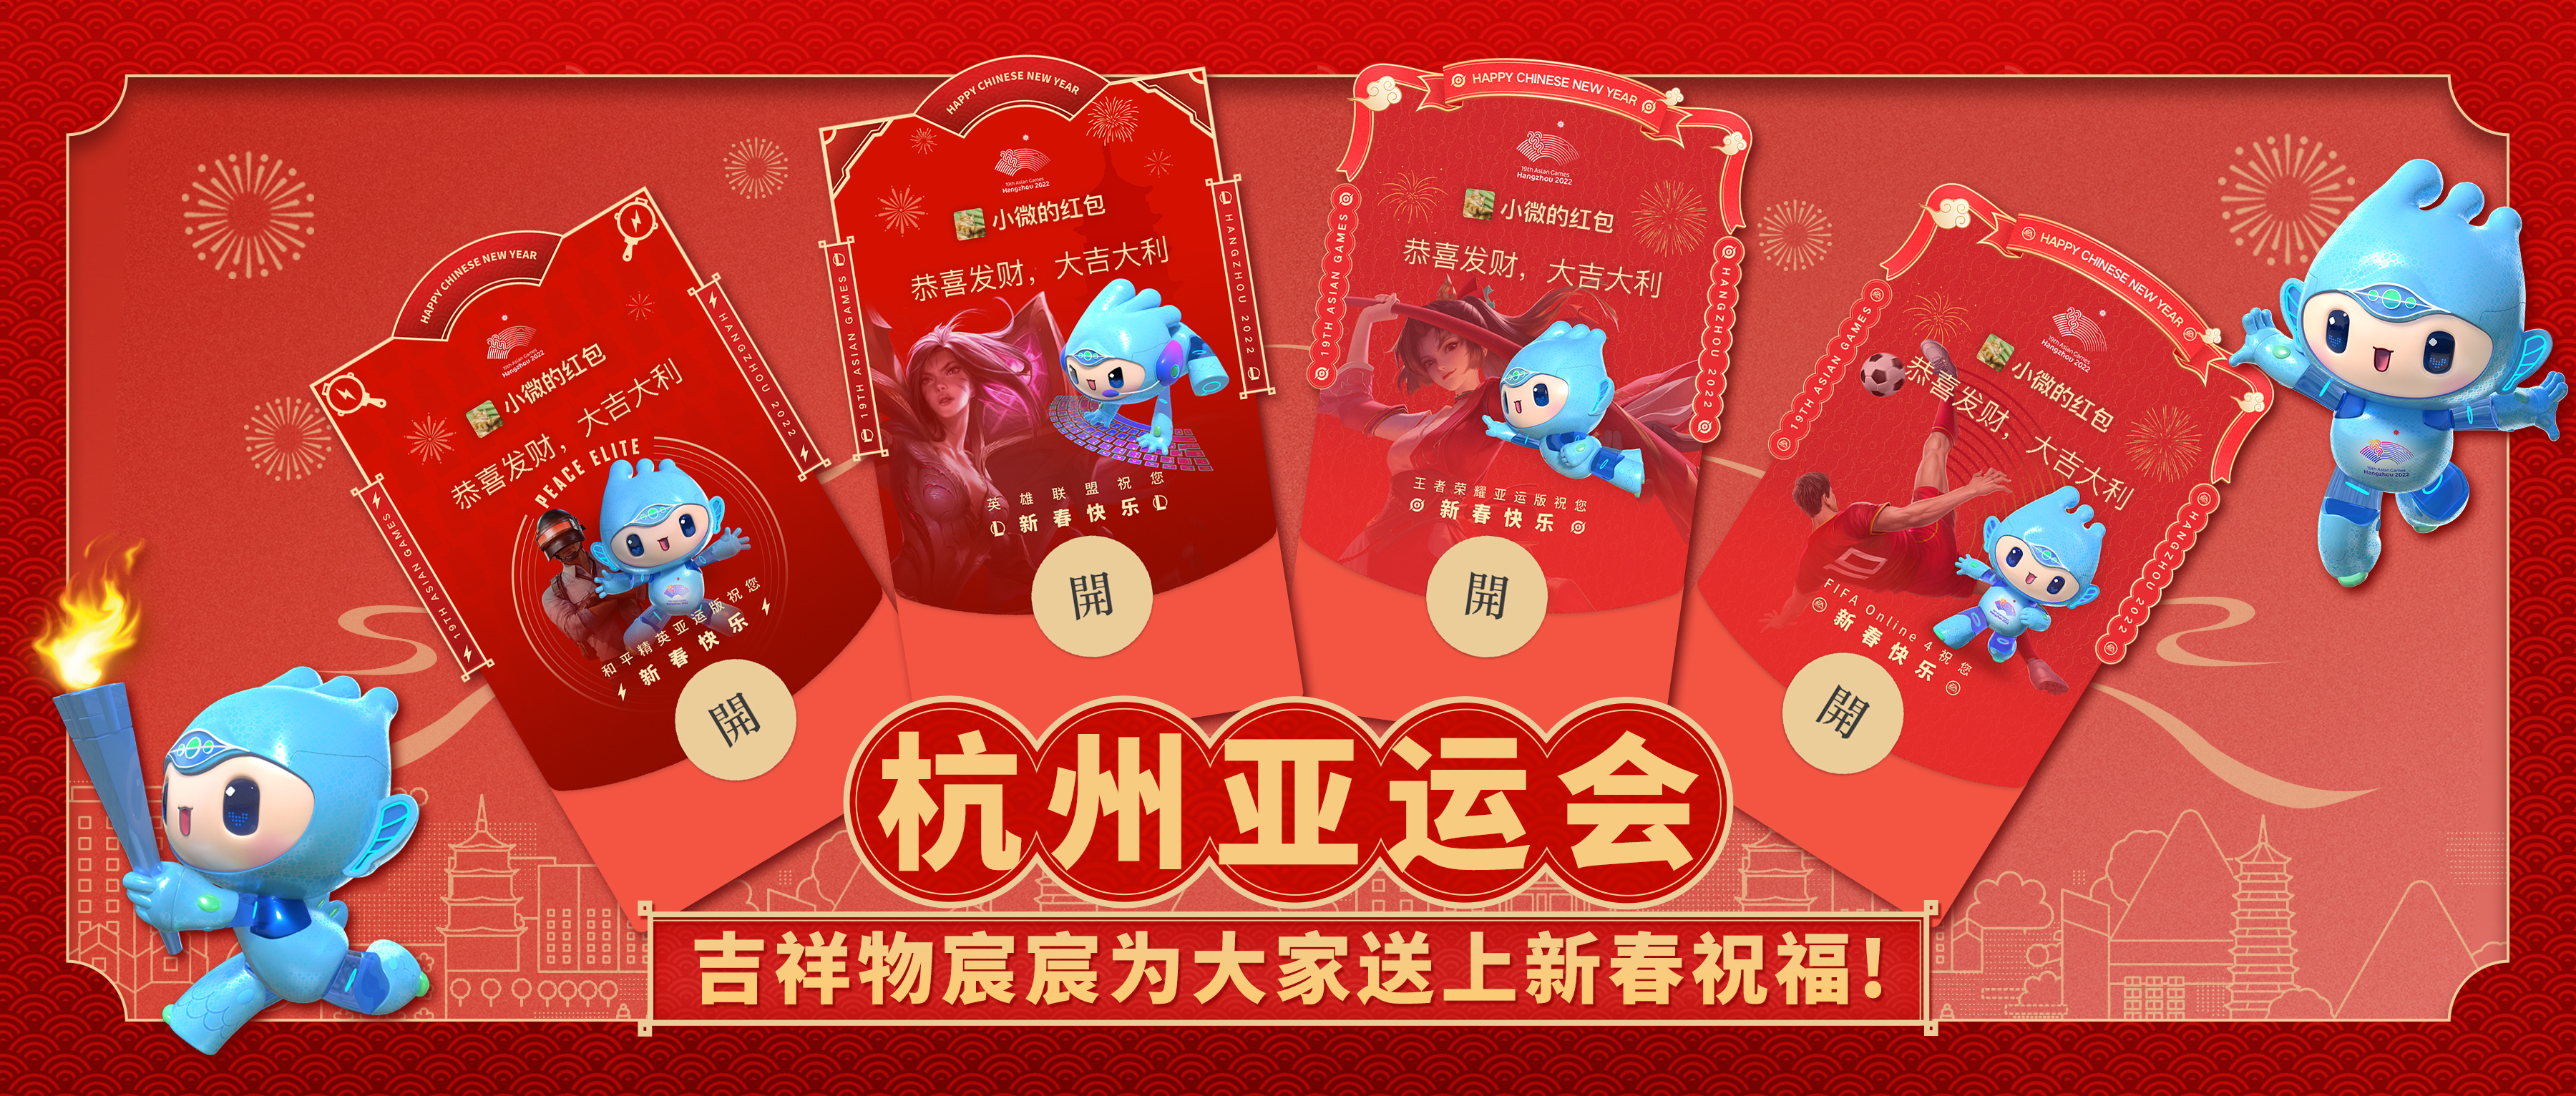 又到了拼手速的时候！杭州亚运会新年红包封面已准备就绪！